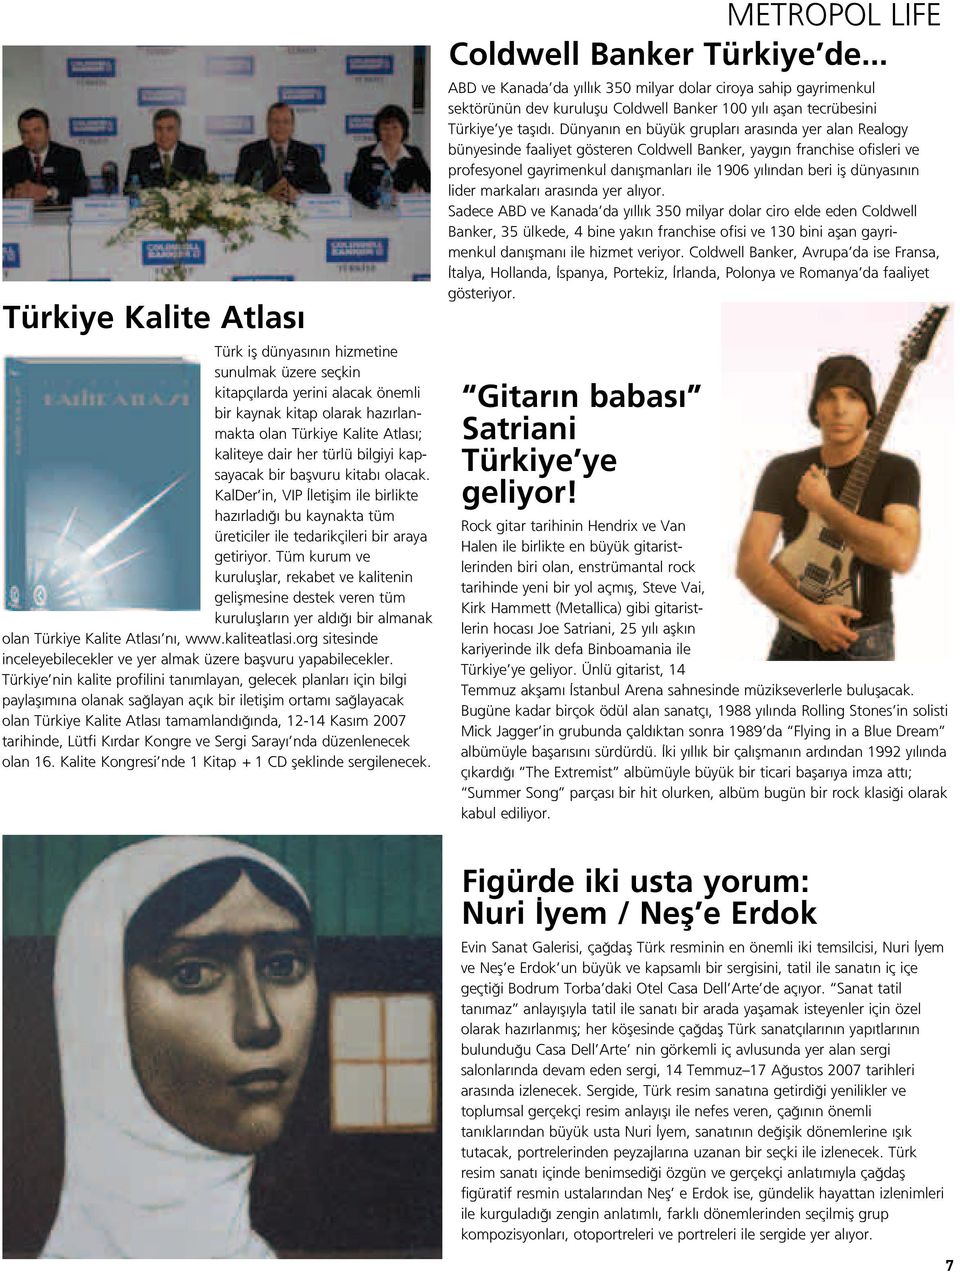 Tüm kurum ve kurulufllar, rekabet ve kalitenin geliflmesine destek veren tüm kurulufllar n yer ald bir almanak olan Türkiye Kalite Atlas n, www.kaliteatlasi.